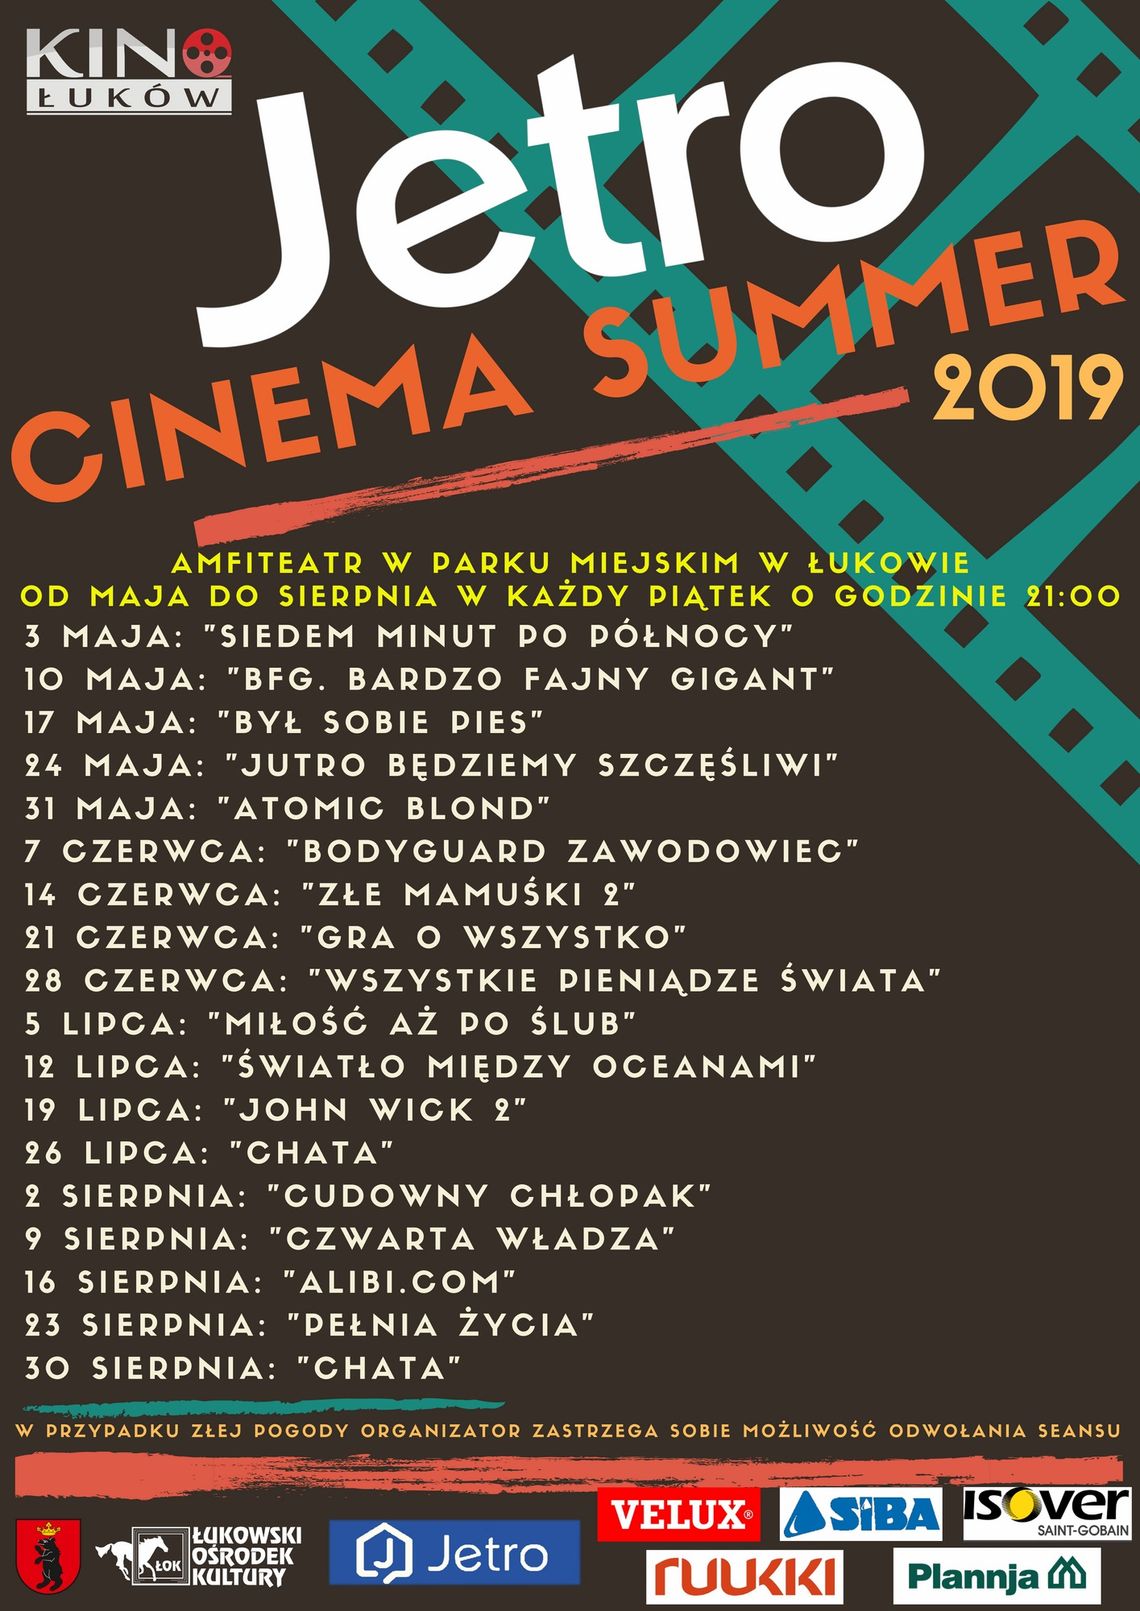 JETRO CINEMA SUMMER - „Atomic Blond”